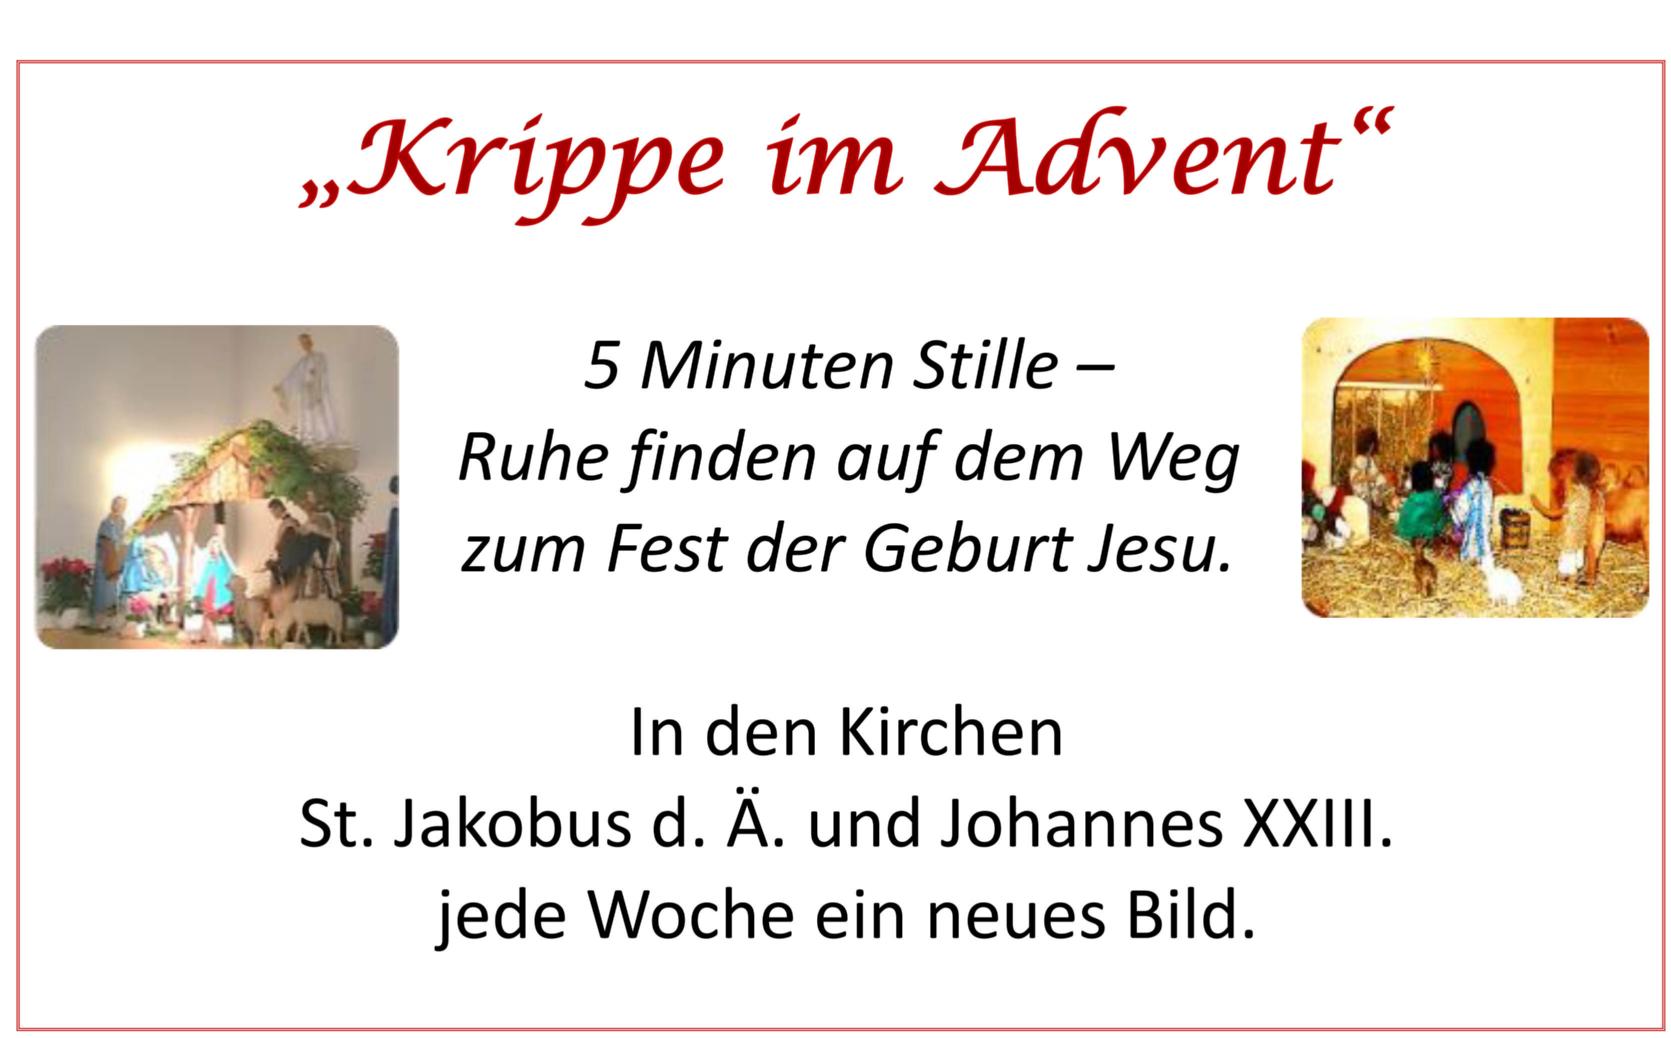 Krippe im Advent-1 (c) Pfarrgruppe Nauheim/Königstädten